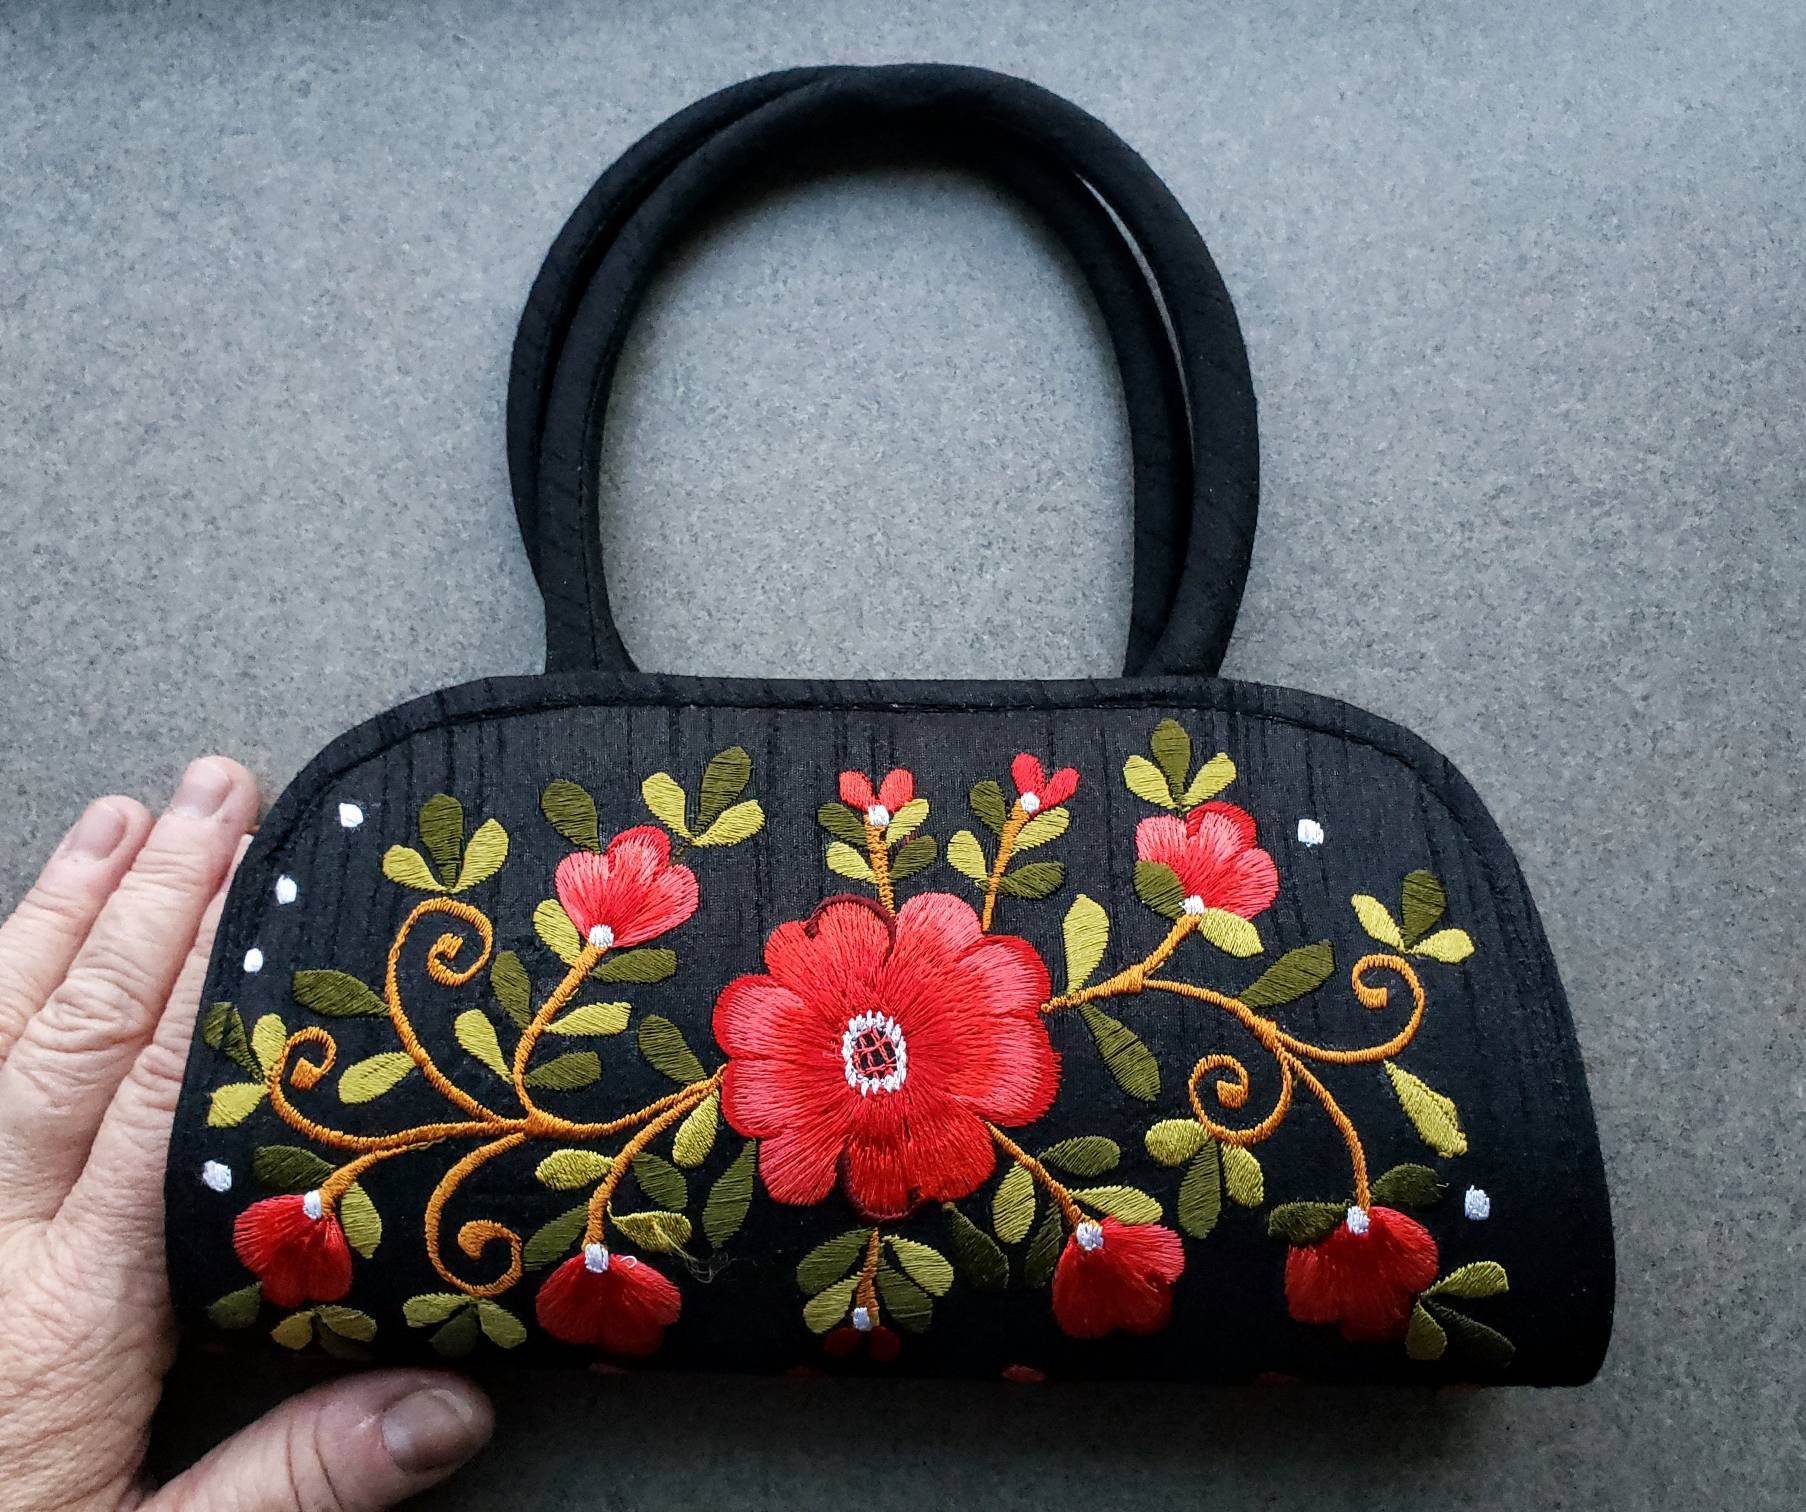 Snapklik.com : Evening Bag - Small Black Clutch Purses For Women Wedding -  Womens Evening Handbags - Womens Clutch Handbags Formal Crossbody Evening  Clutch - Sparkly Womens Clutch Purse Hand Bag